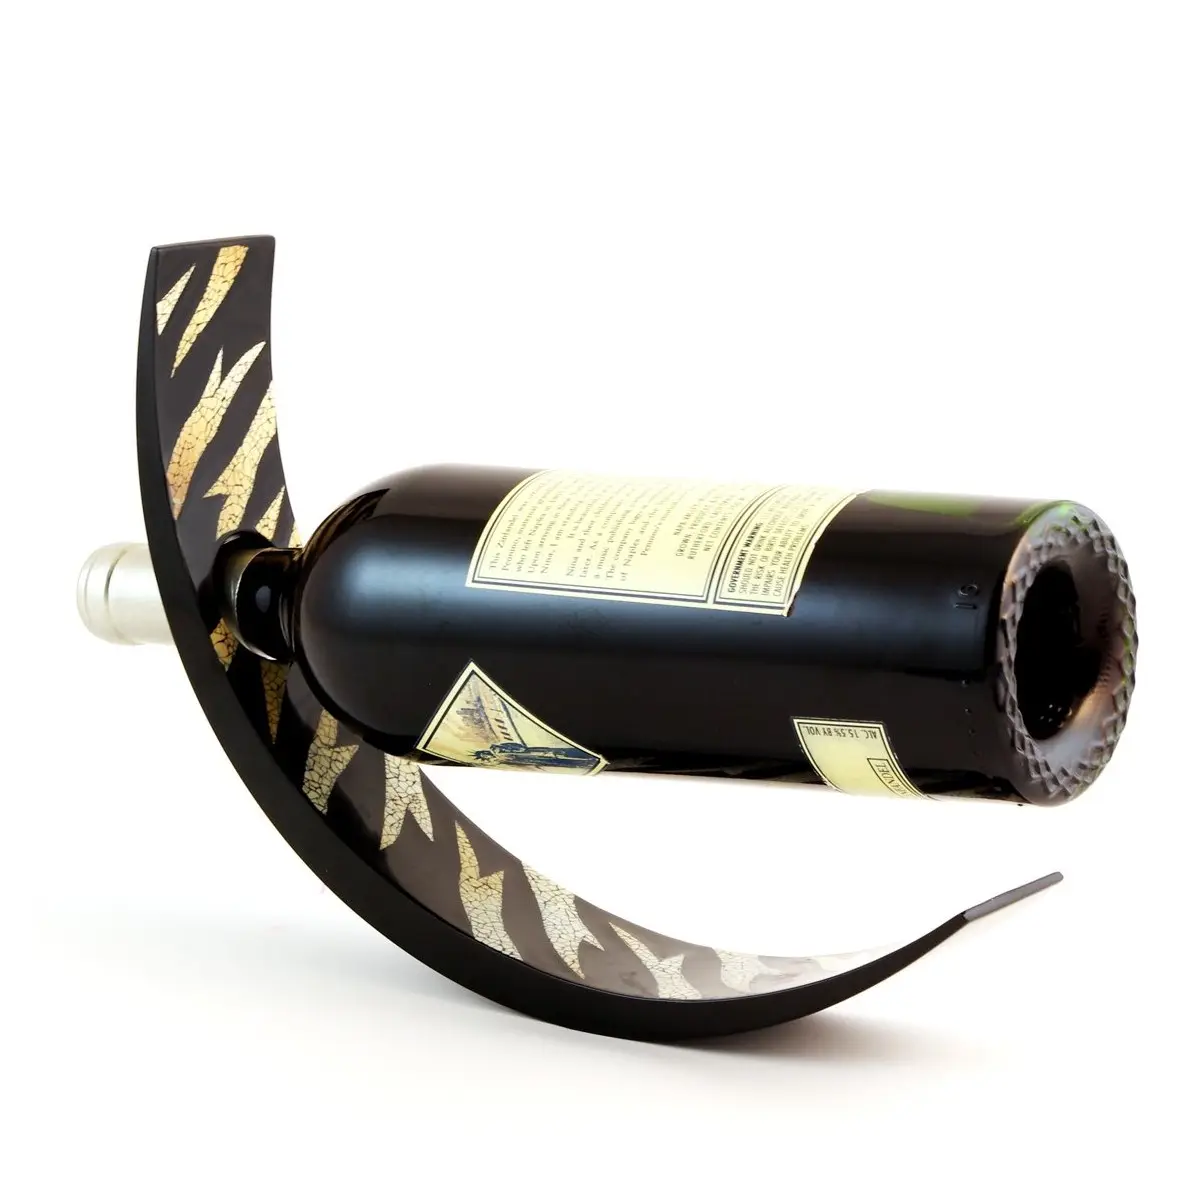 Yeni tasarım toptan lake likör şişe tutucu şarap ark denge hediye ve barware aksesuarları